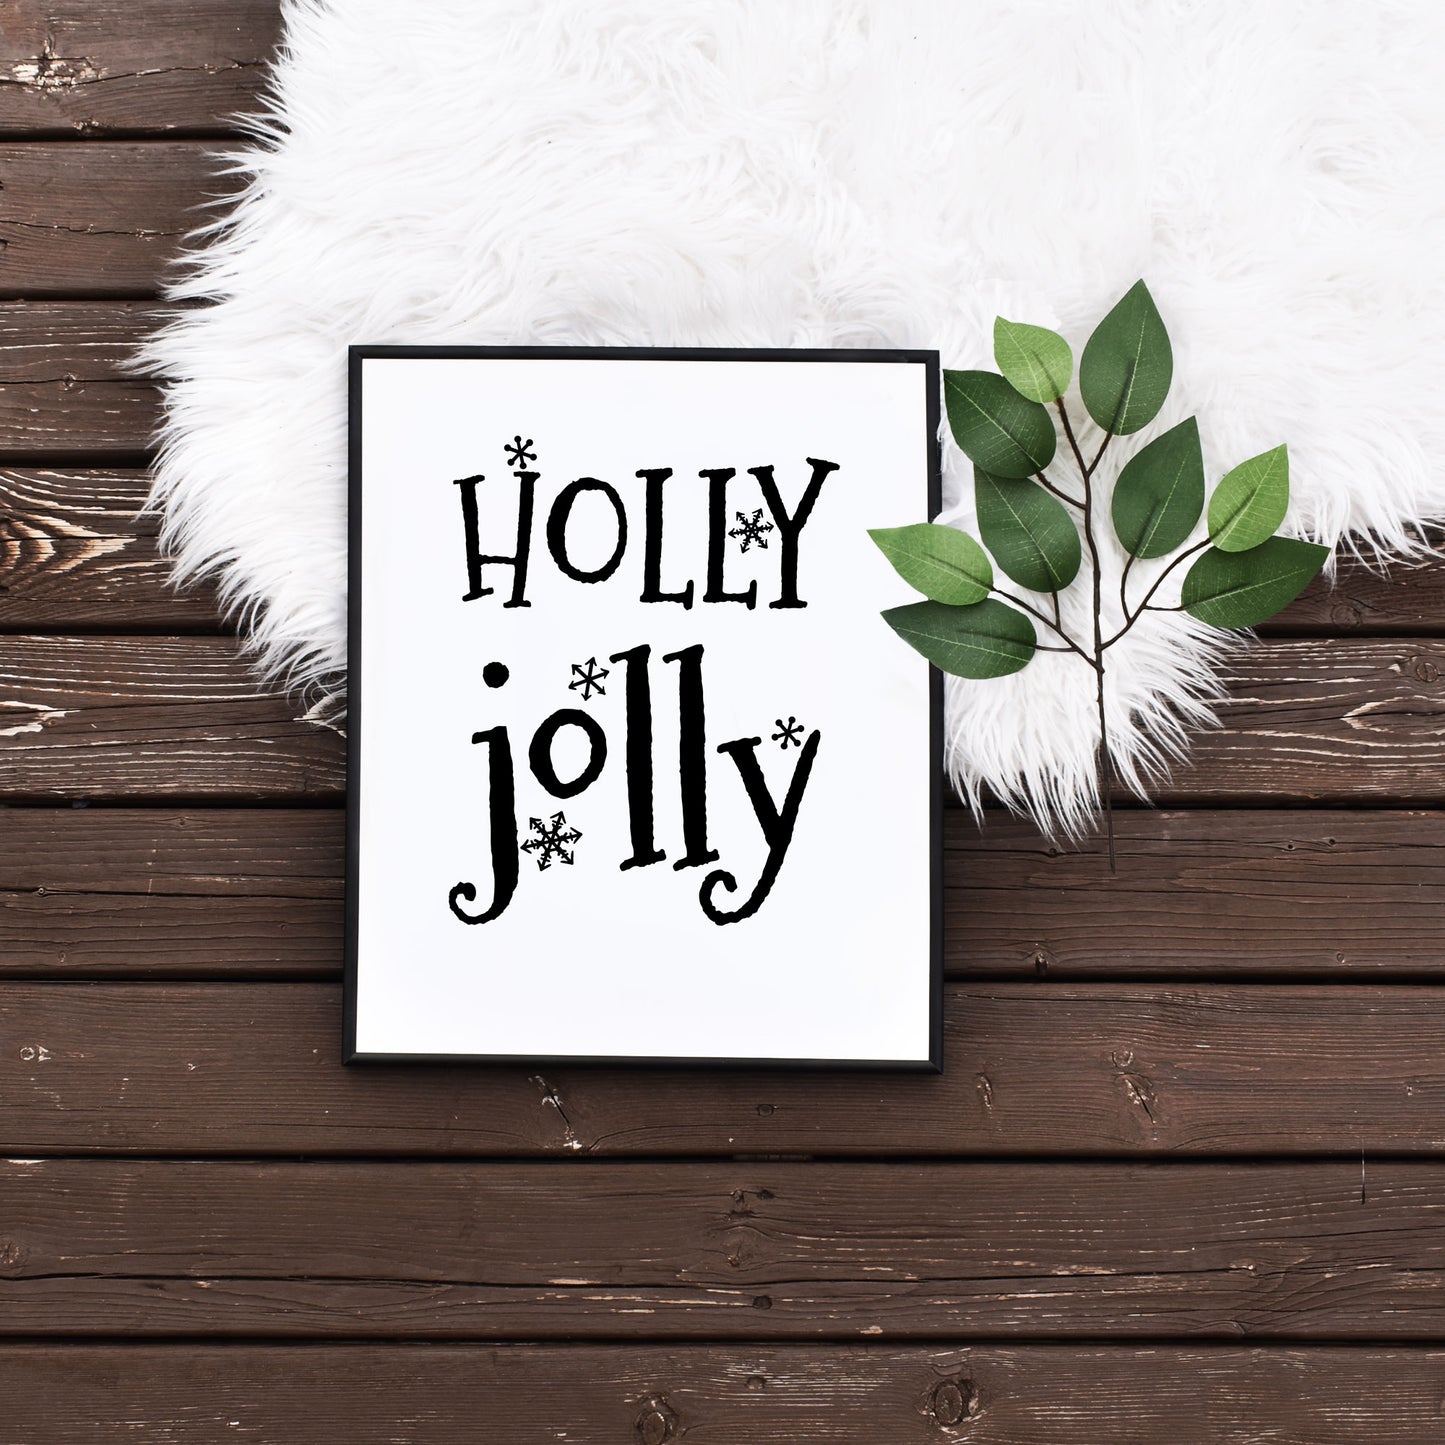 Easy Printable Holly Jolly Printable Christmas Art on a Budget